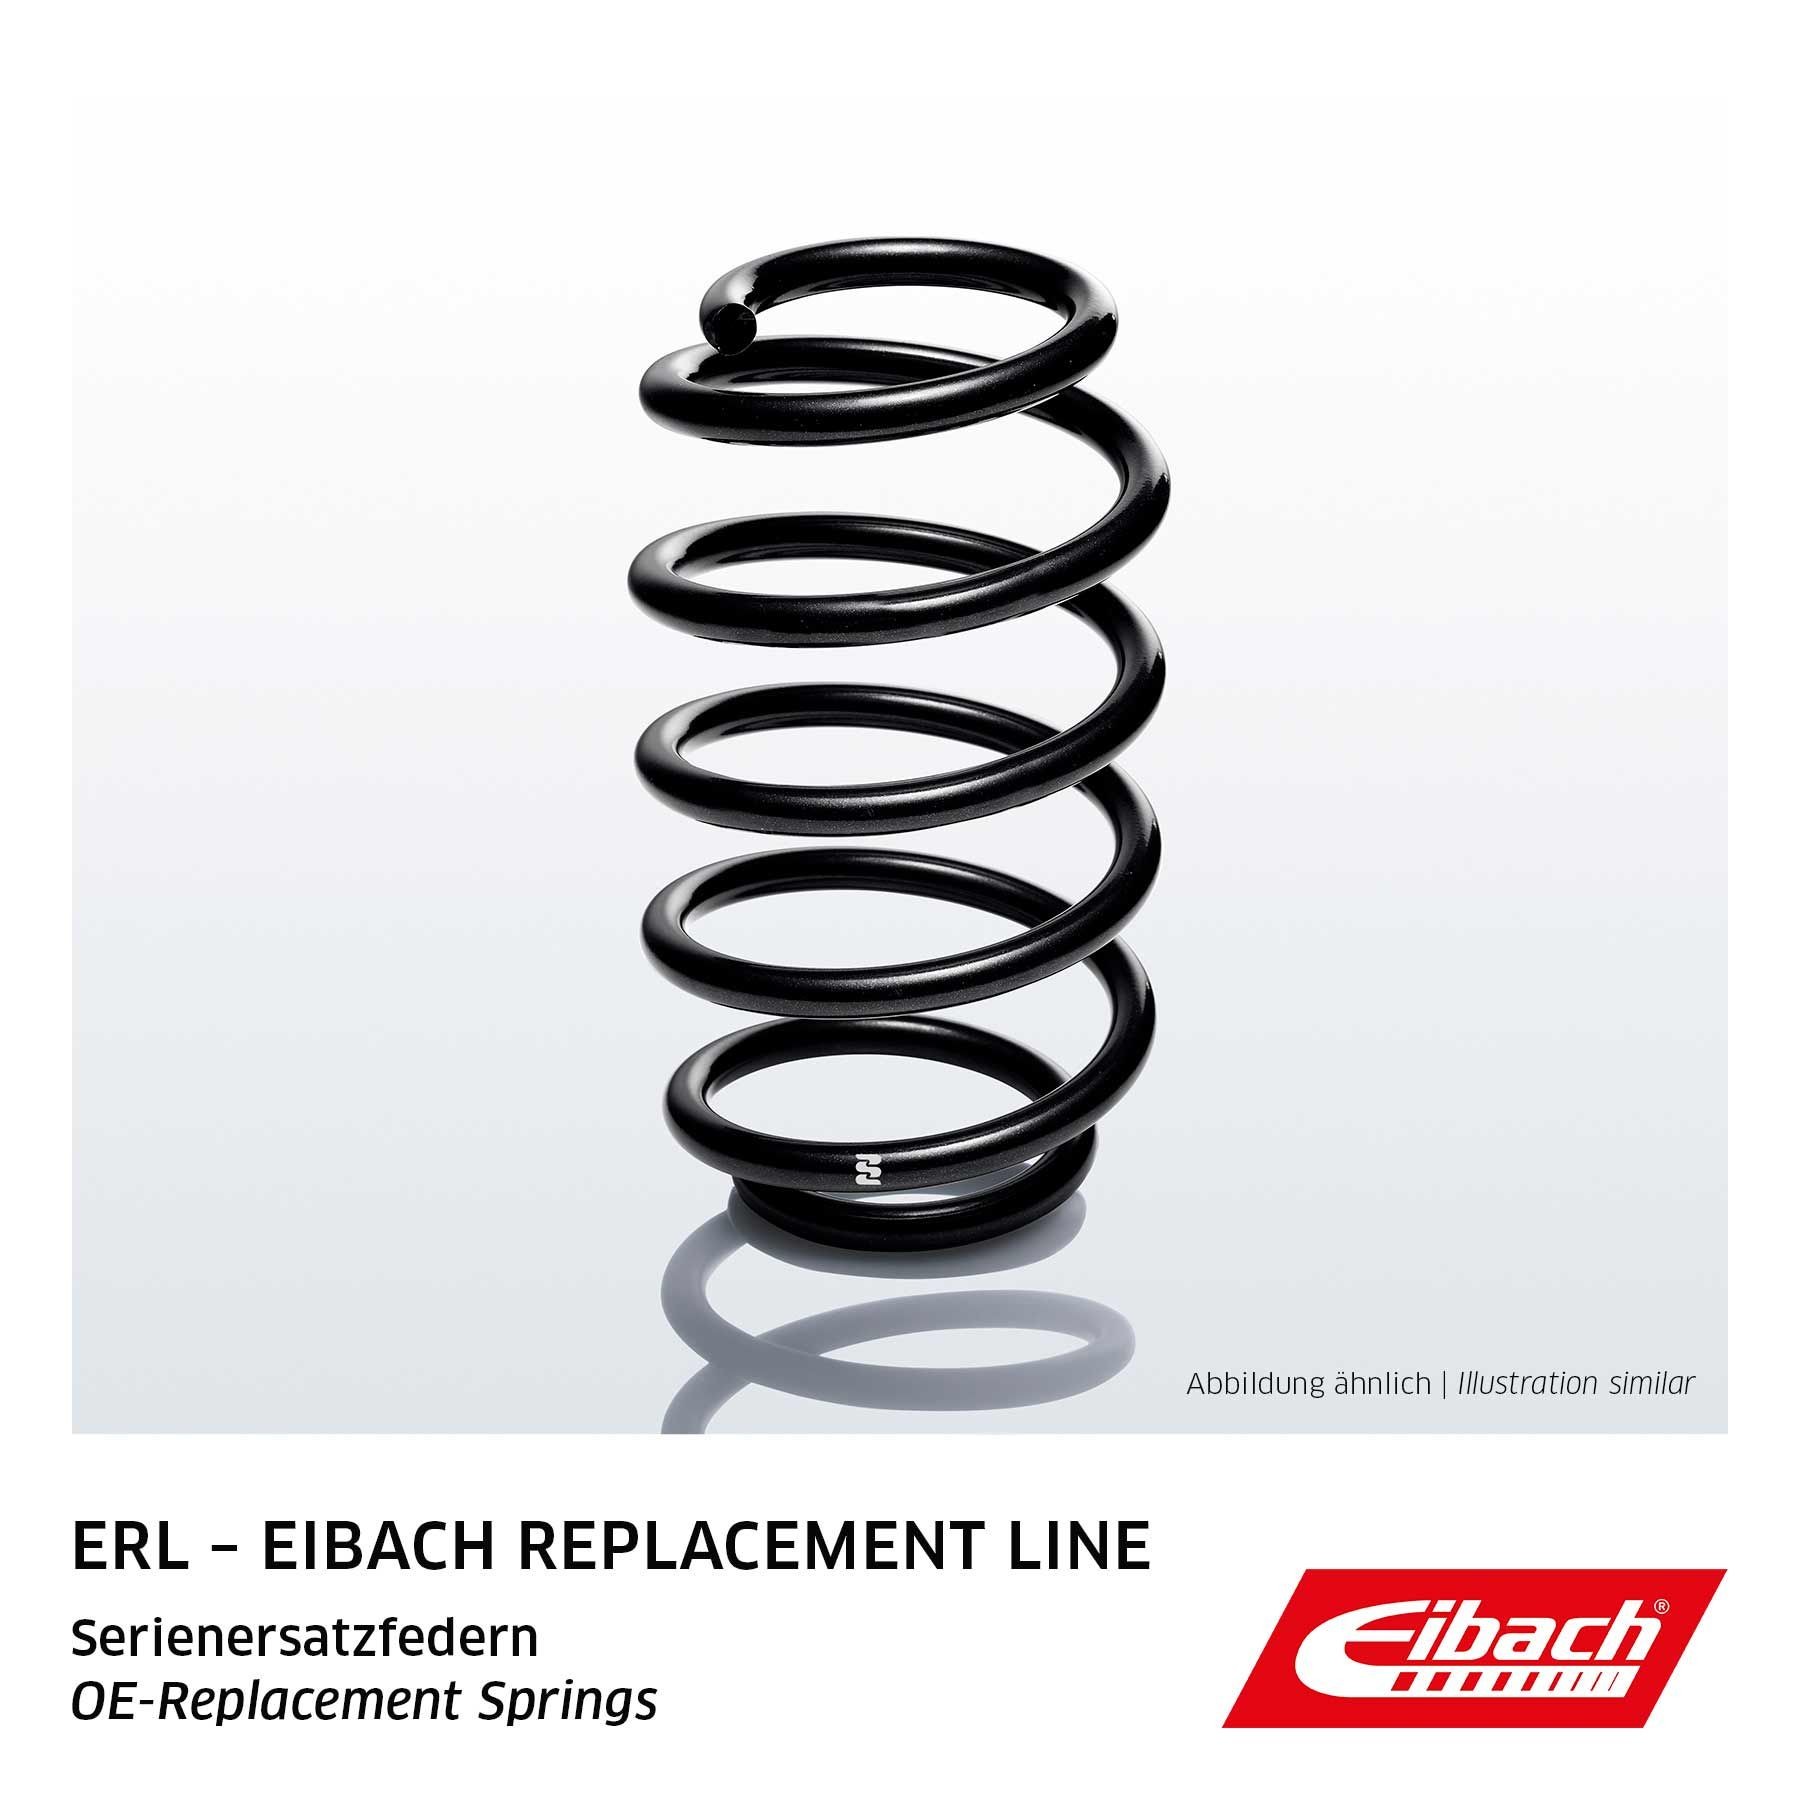 EIBACH Single Spring ERL (OE-Replacement) R10063 Molle ammortizzatori Assale anteriore, Molla ad elica, per veicoli con autotelaio standard